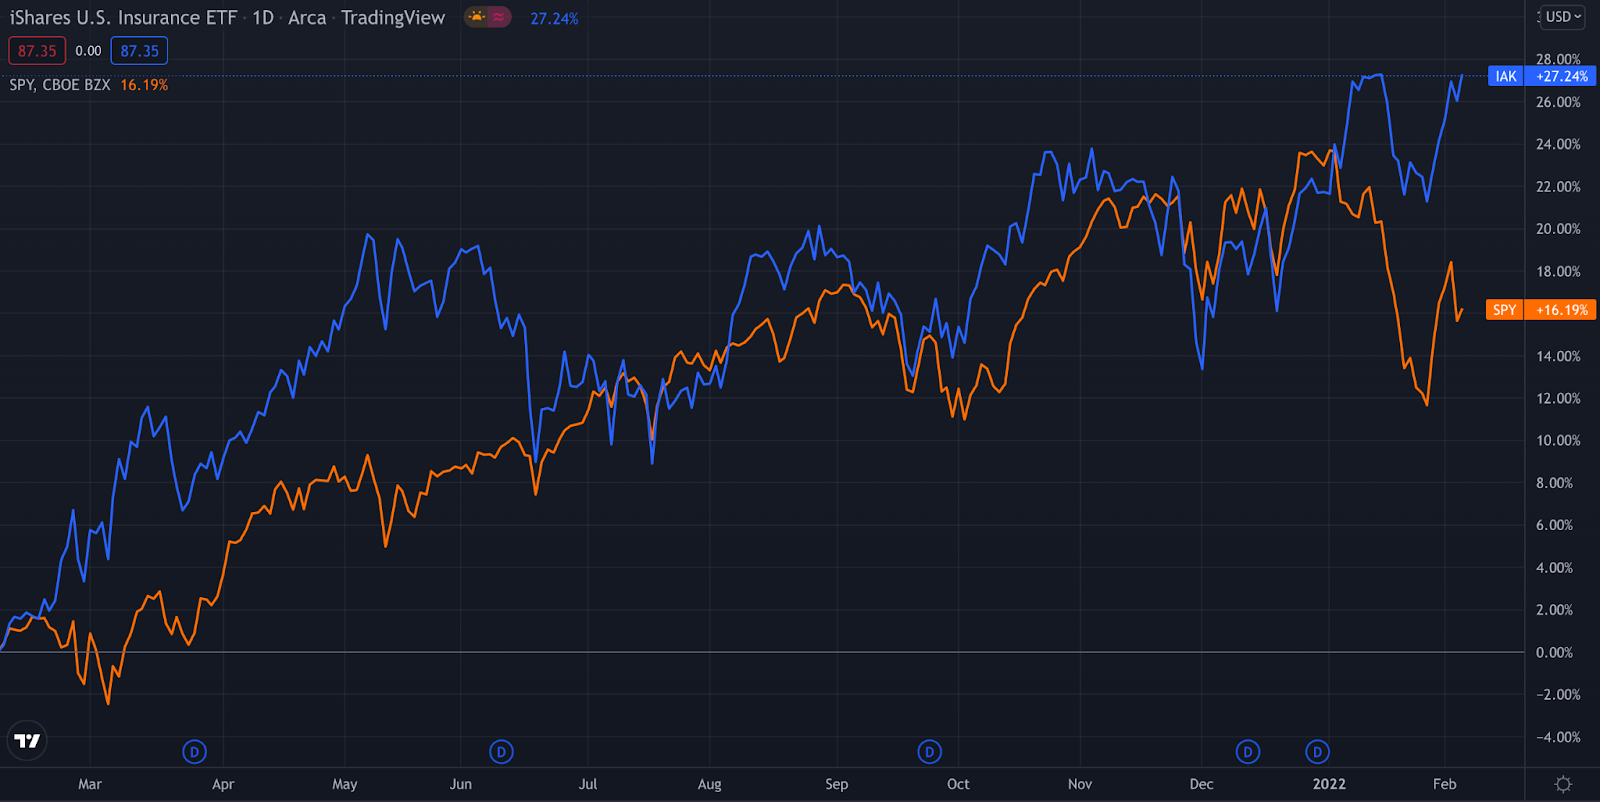 Рис 1. Сравнение доходности ETF на страховые компании (IAK) (синий график) и индекса S&P 500(оранжевый график)  за последний год. Источник: TradingView 